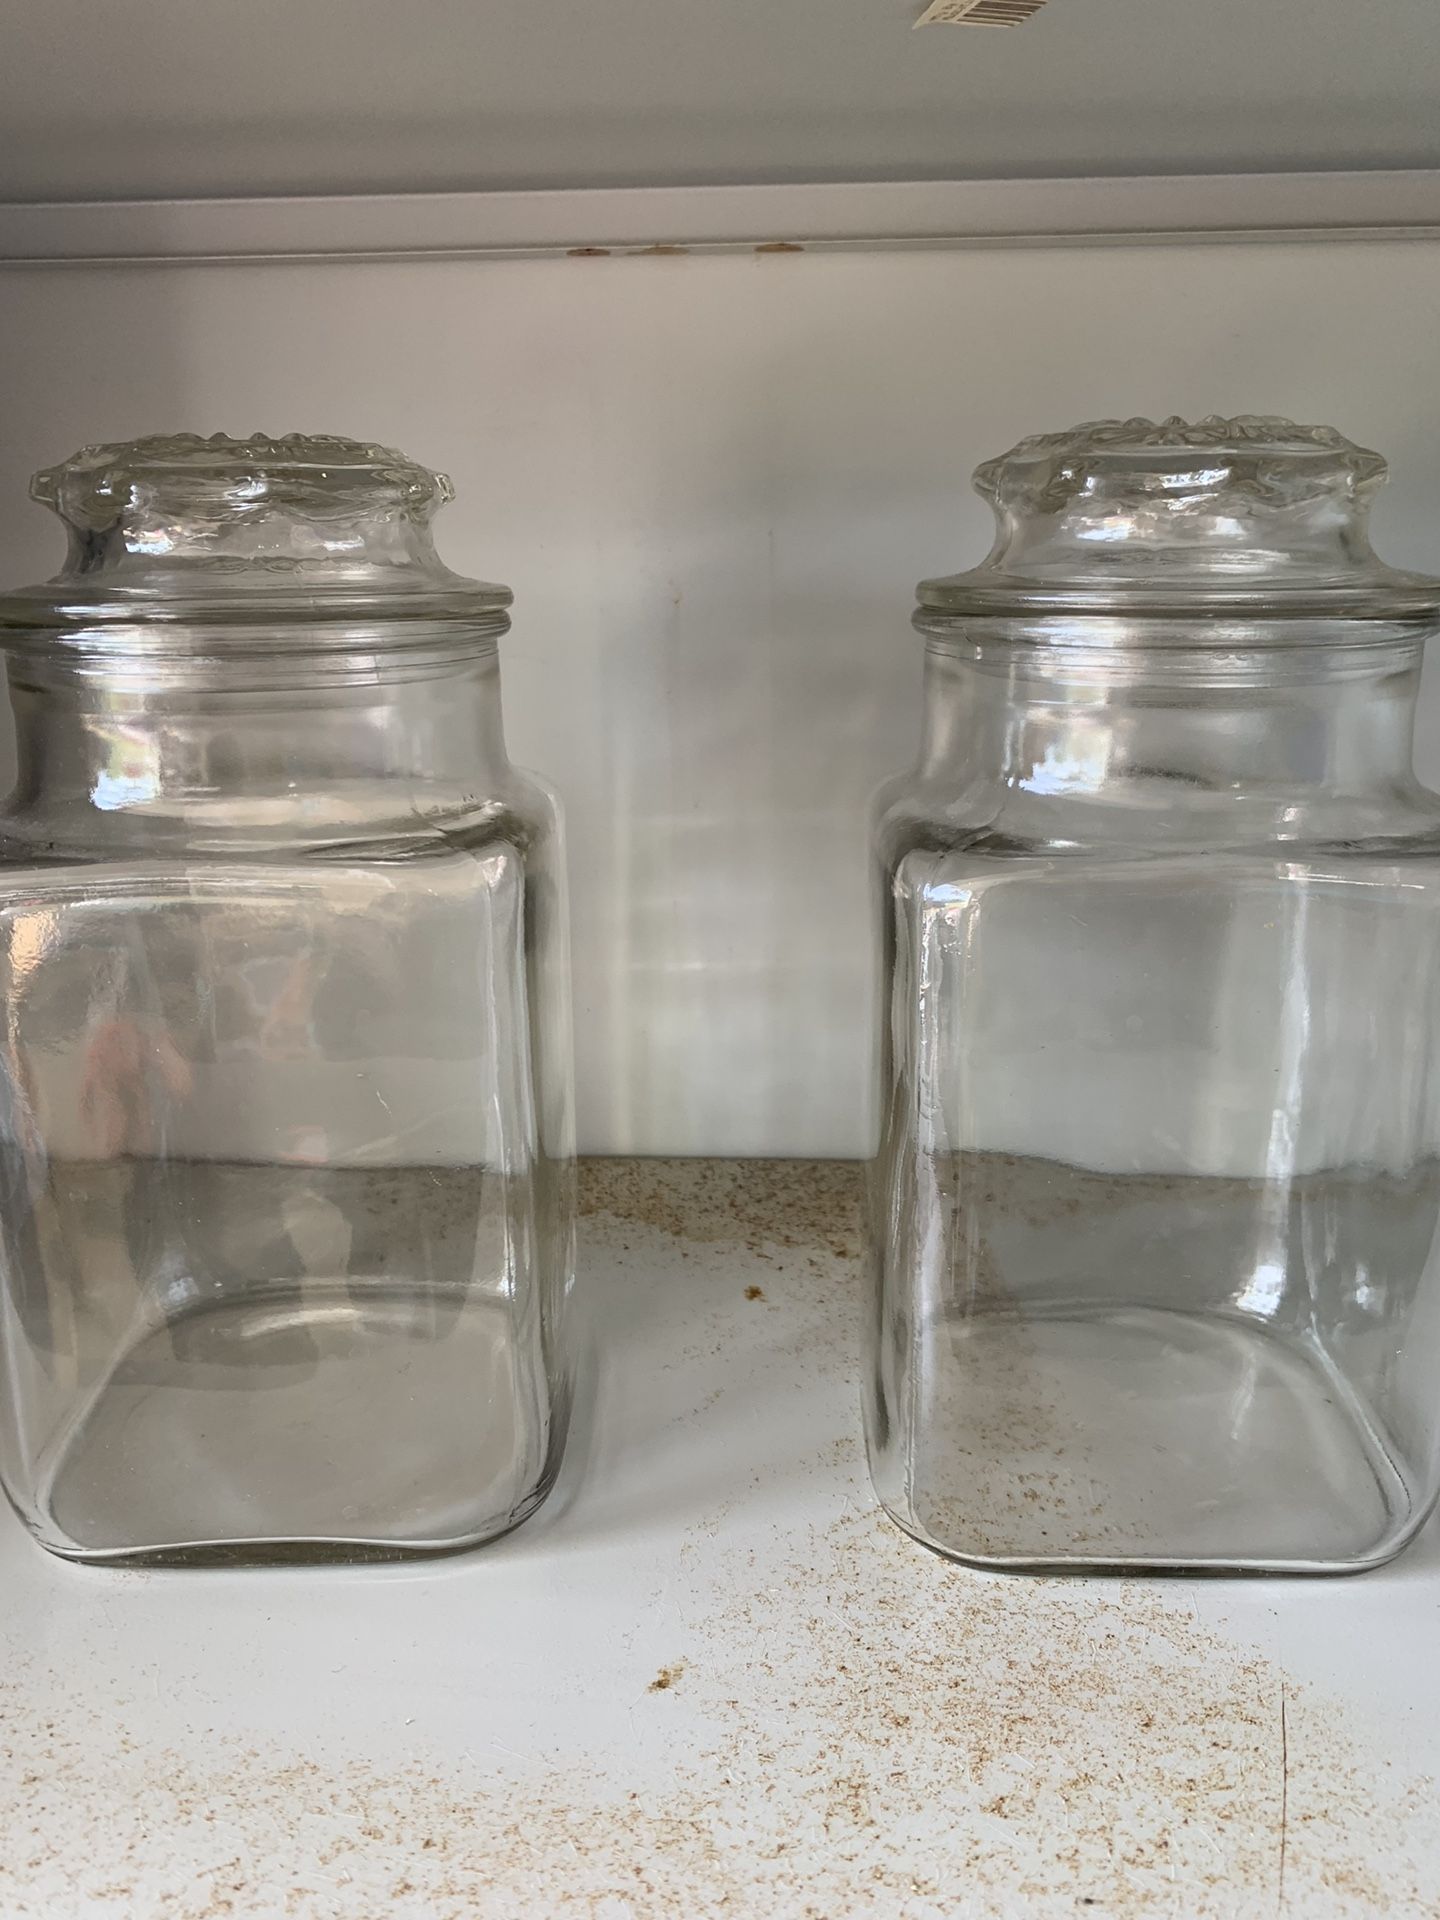 2 MATCHING GLASS JARS